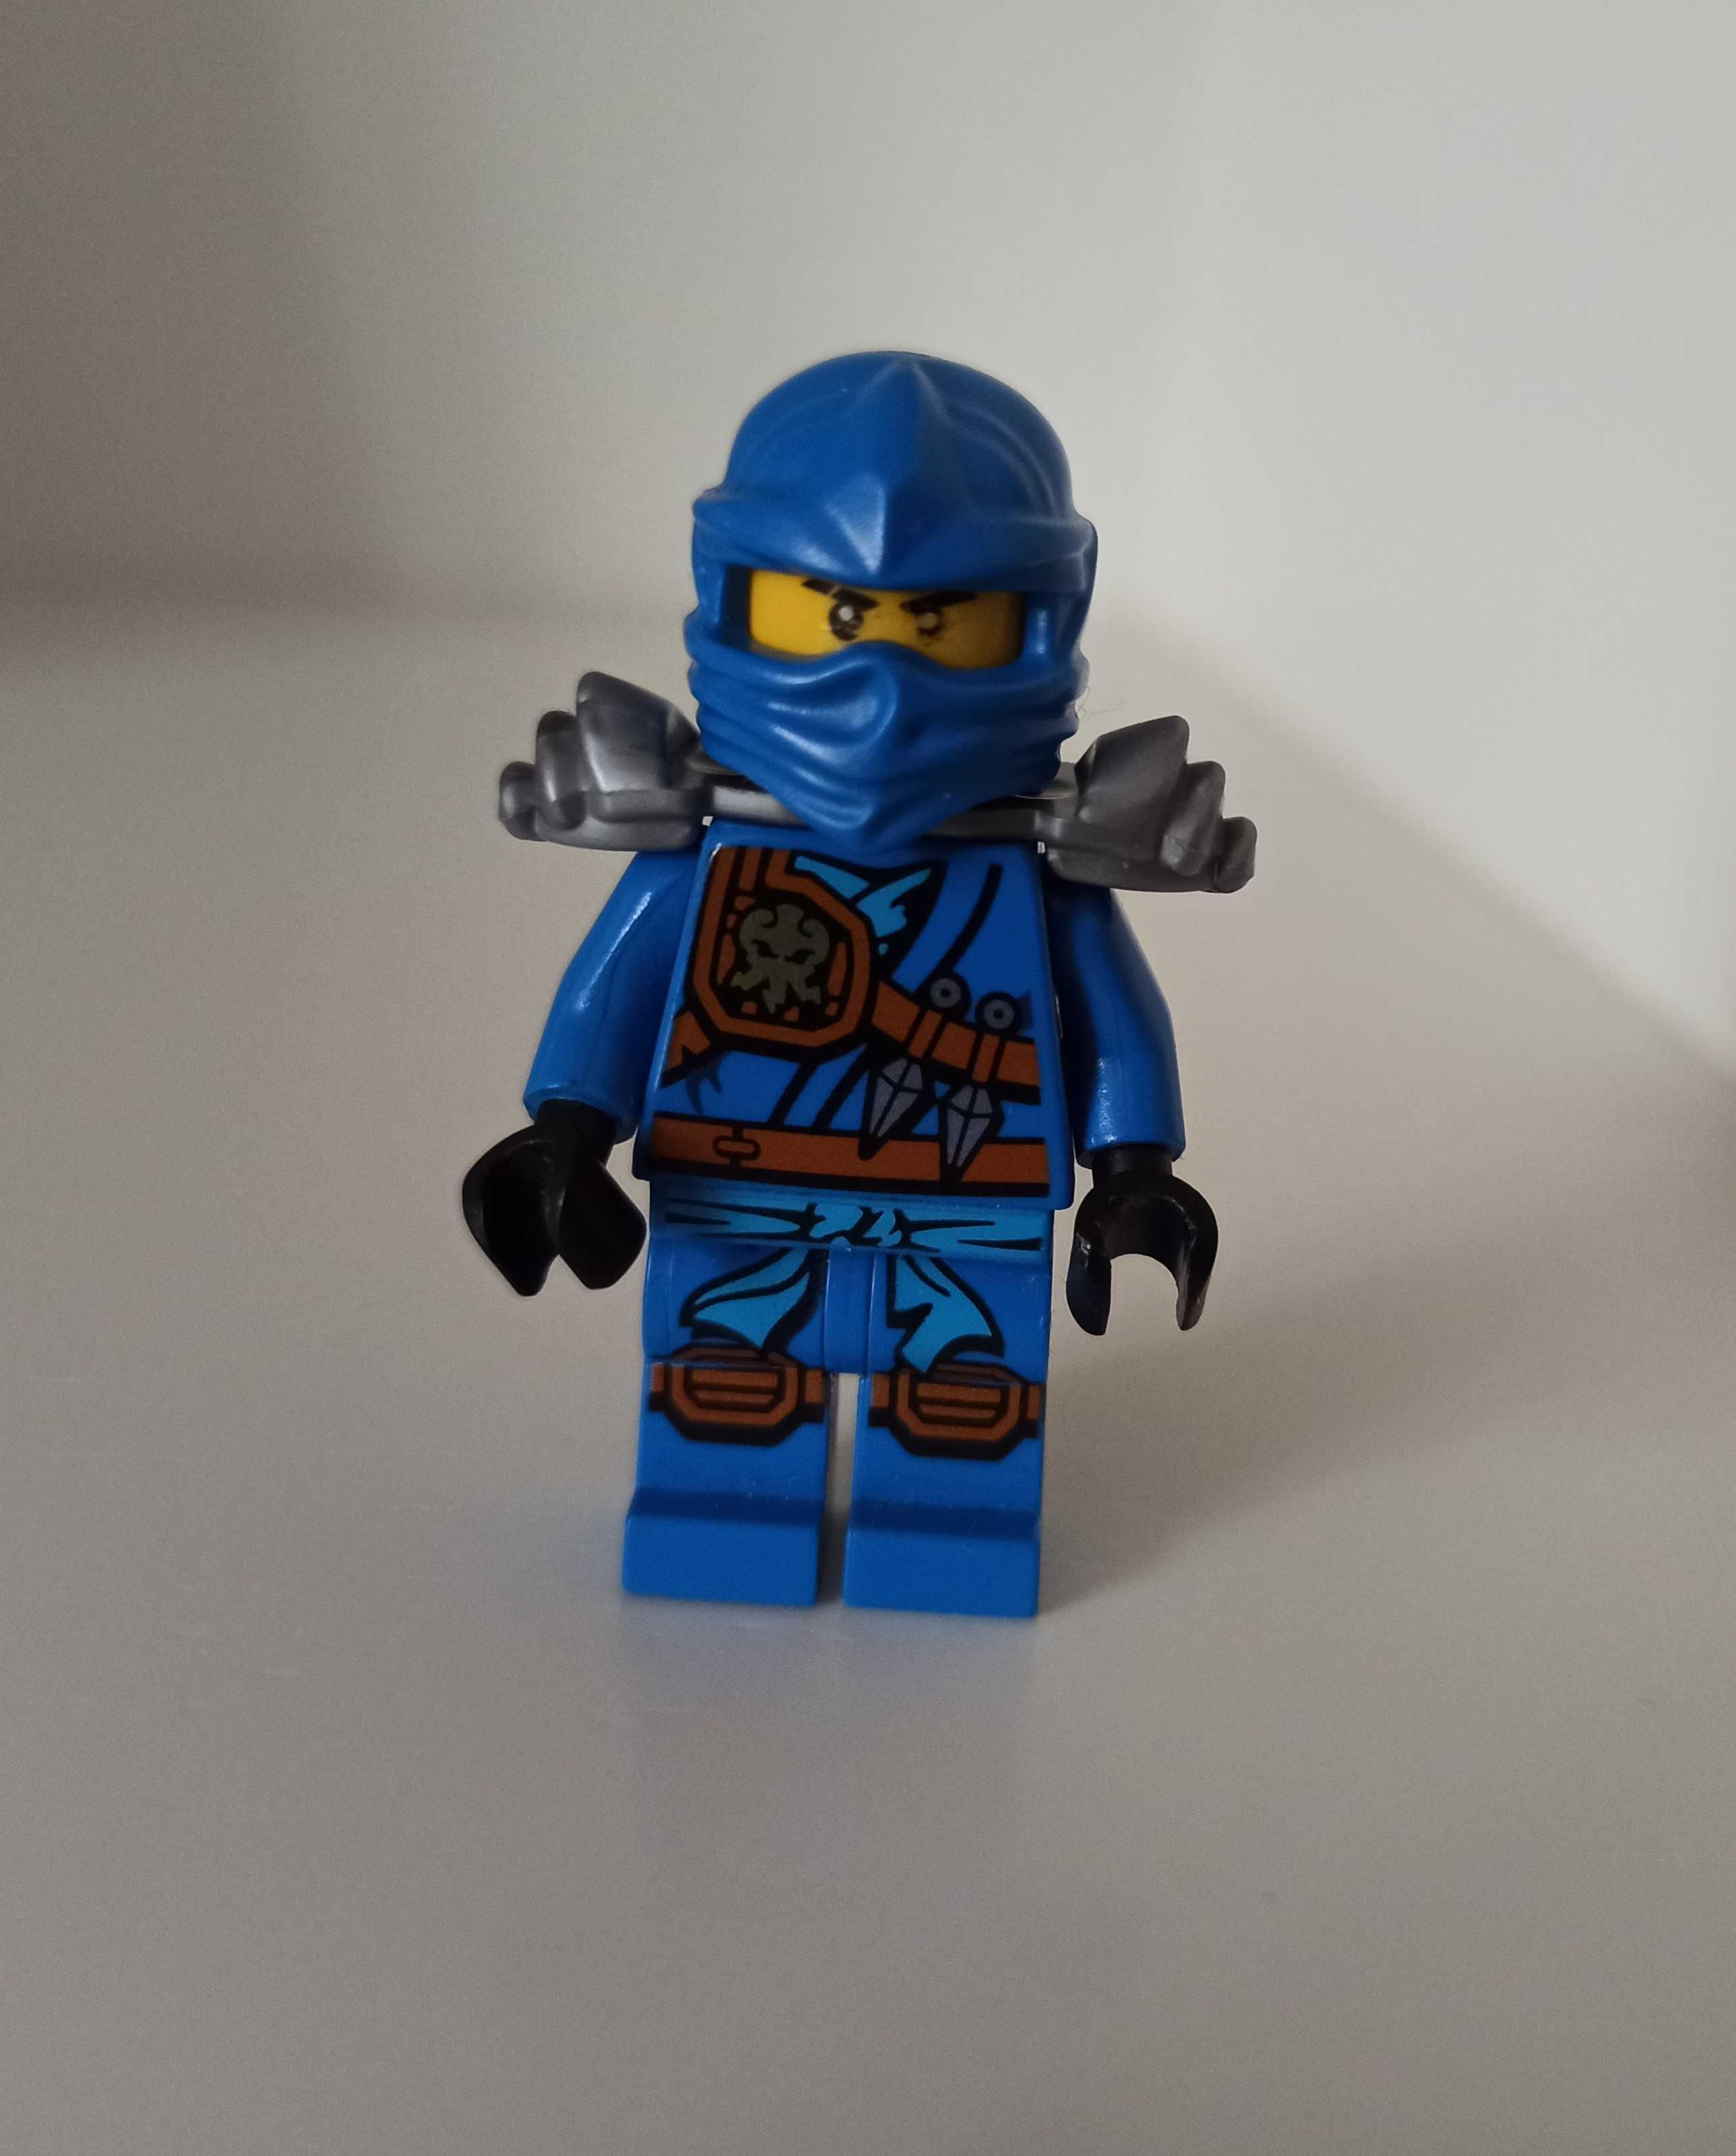 Minifigurka Lego Ninjago Jay njo216